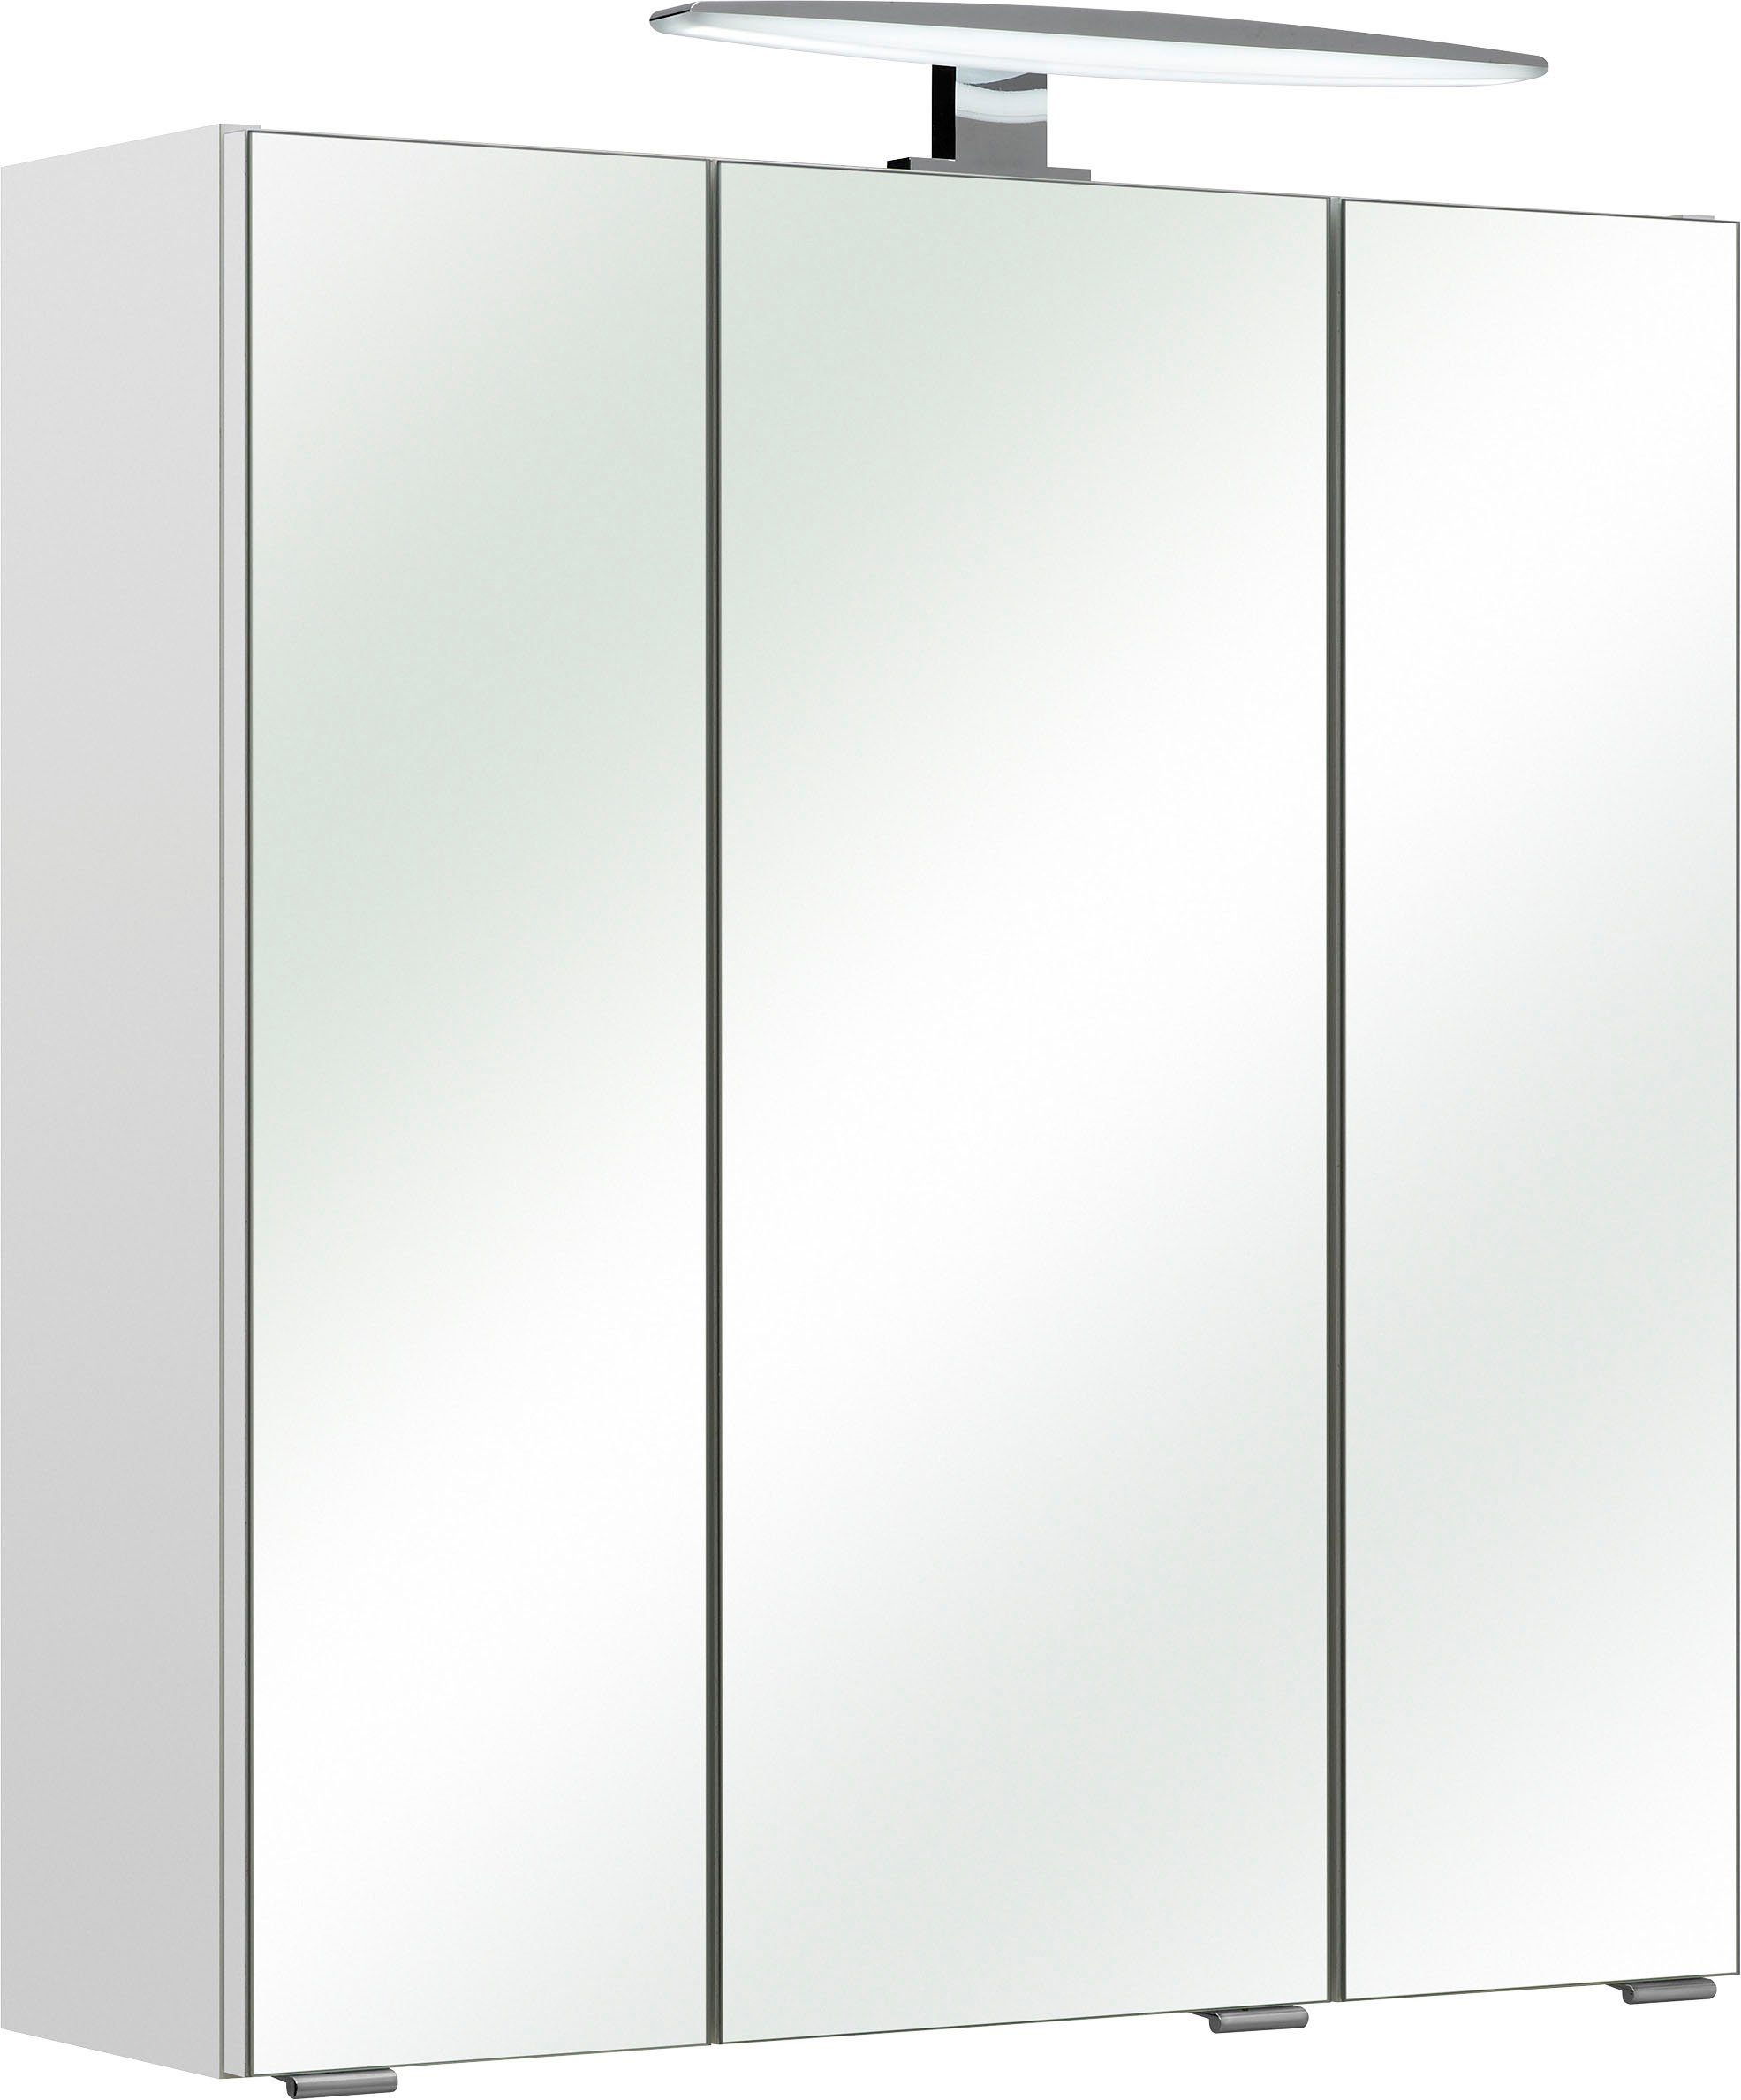 PELIPAL Spiegelschrank »Quickset 953« Breite 65 cm, 3-türig,  LED-Beleuchtung, Schalter-/Steckdosenbox, Türdämpfer online kaufen | OTTO